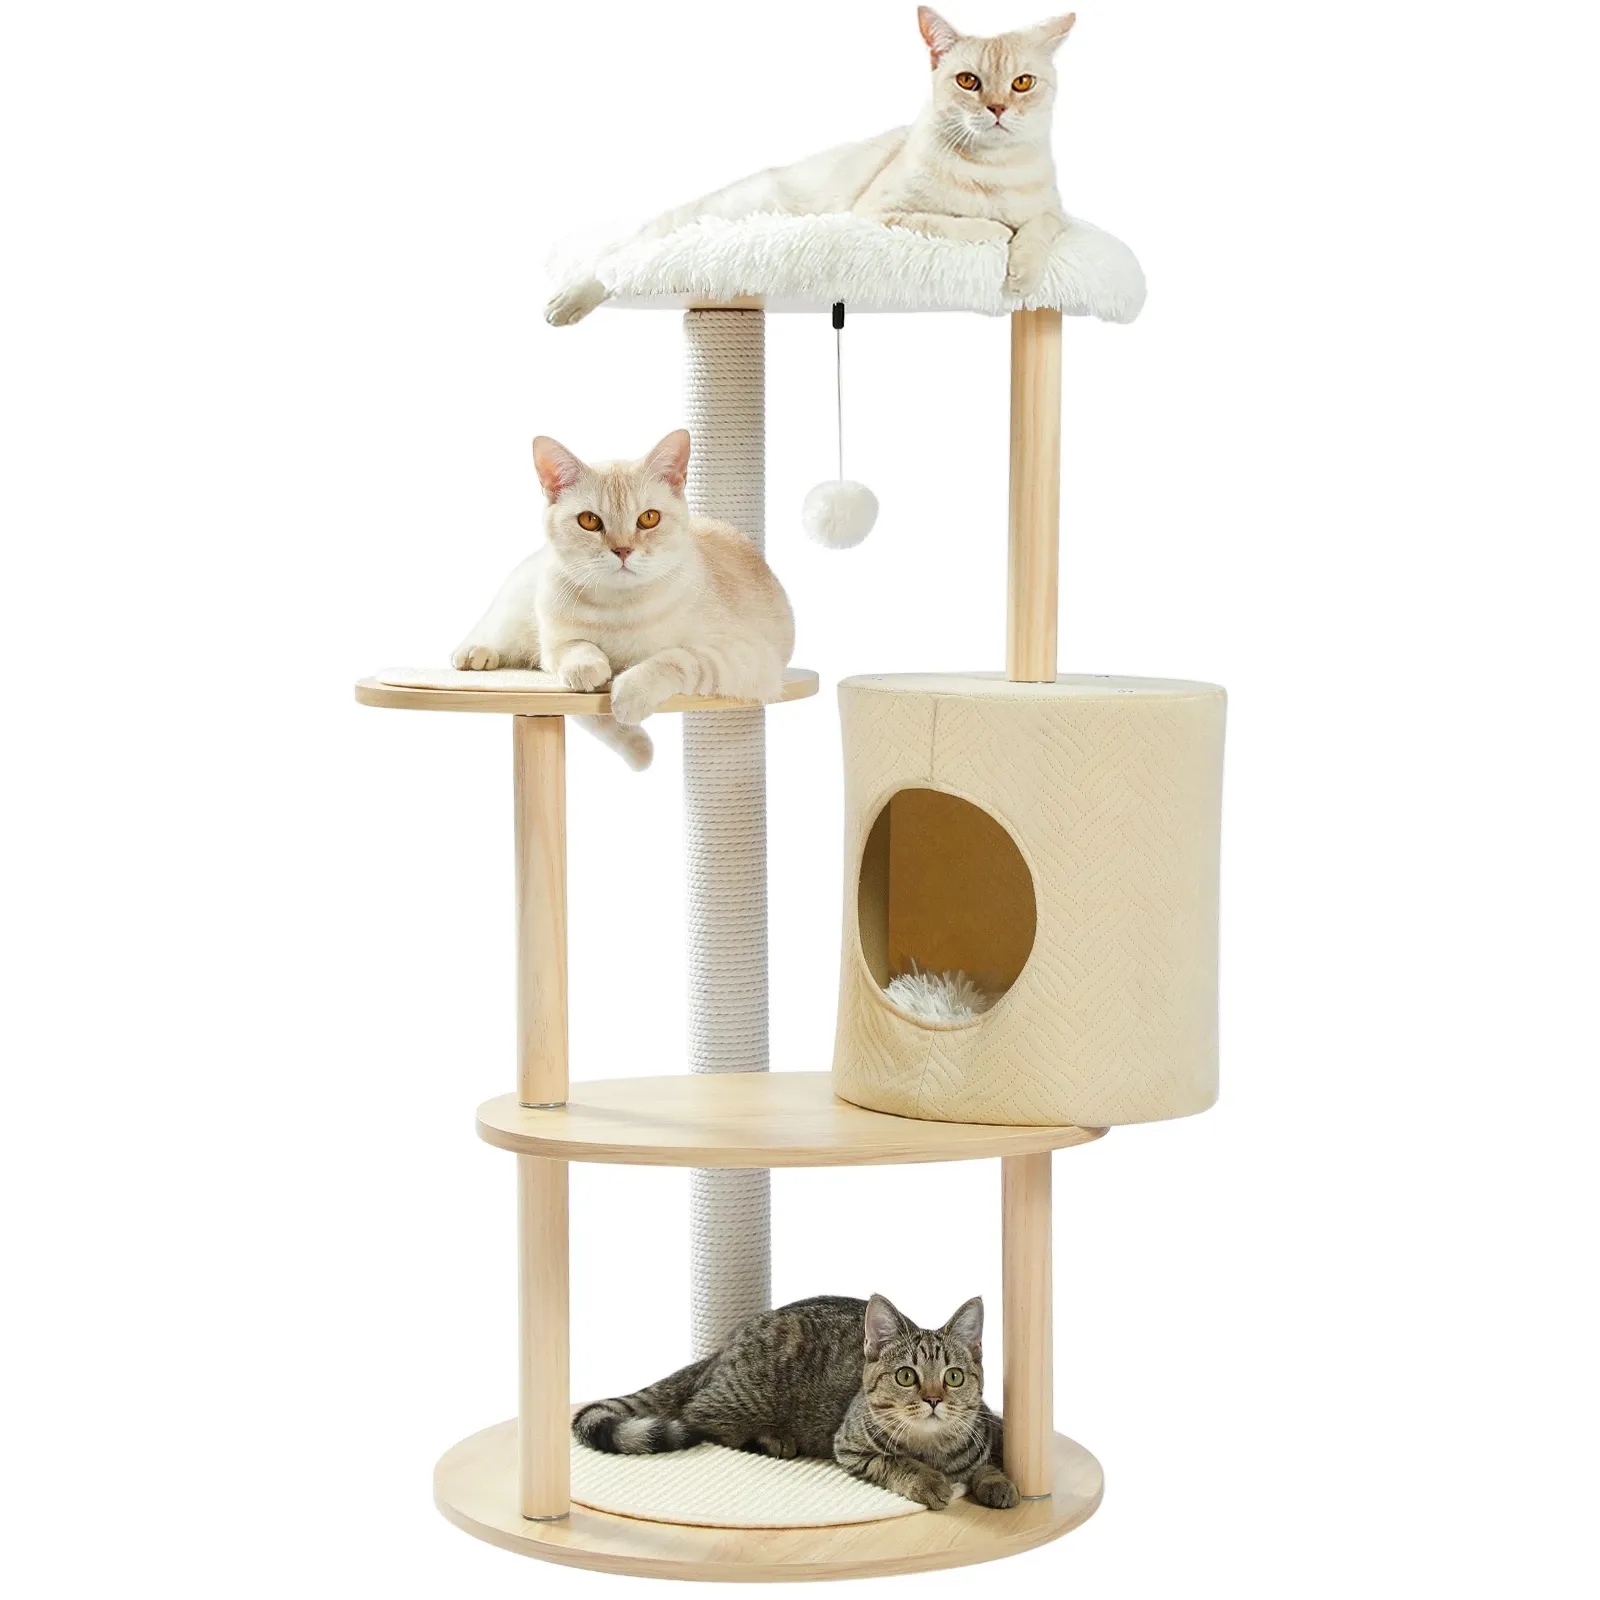 Kedi tırmanma çerçeve büyük kedi tırmalamak oyuncak kedi evi ağacı Pet mobilya çizik ahşap ağaç